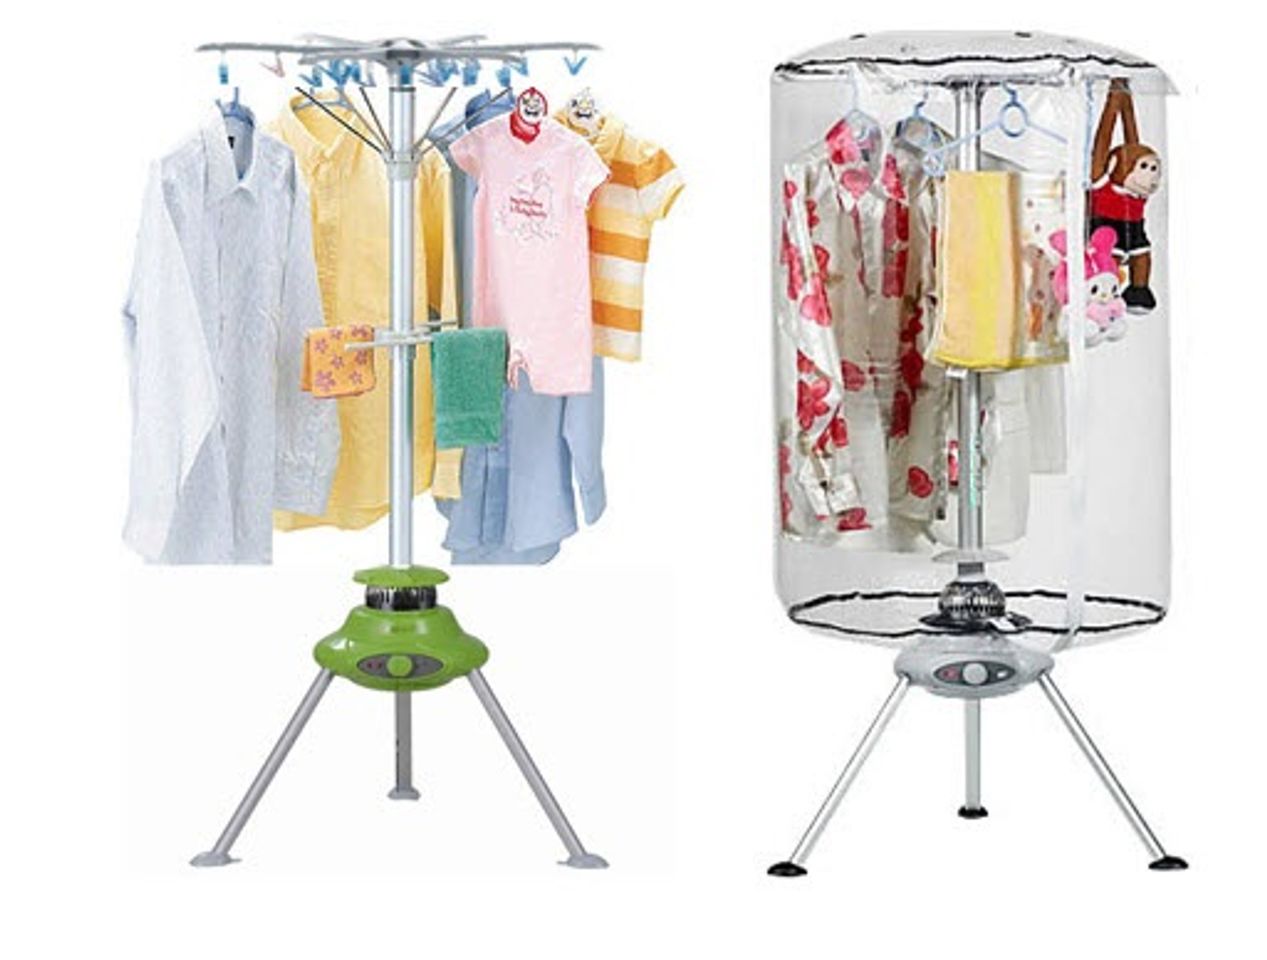 Các mẹ có thể dùng máy sấy làm giá treo quần áo khi không sử dụng